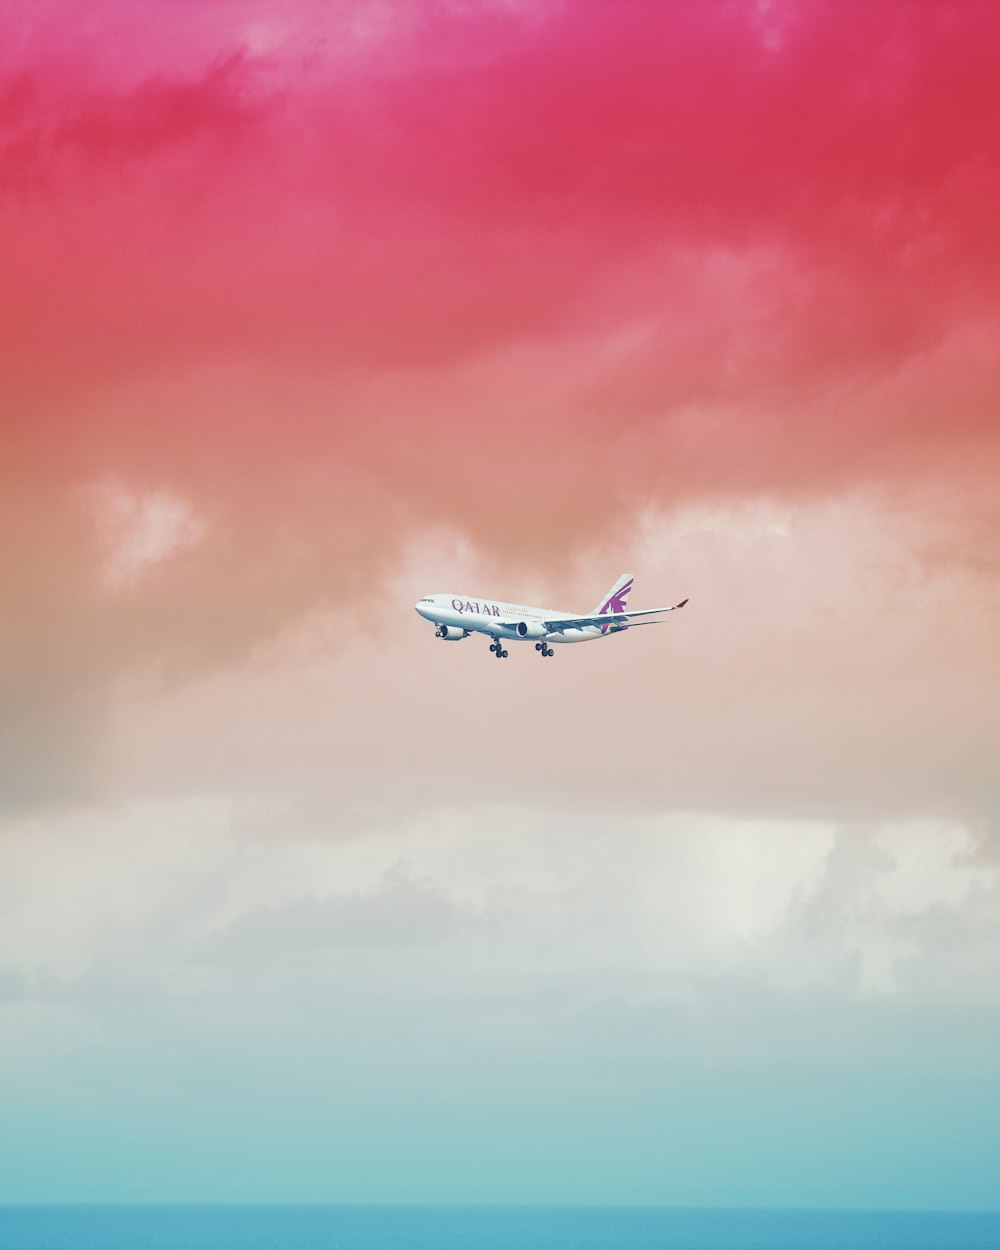 Flugzeug der Qatar Airlines fliegt unter roter Wolkenformation